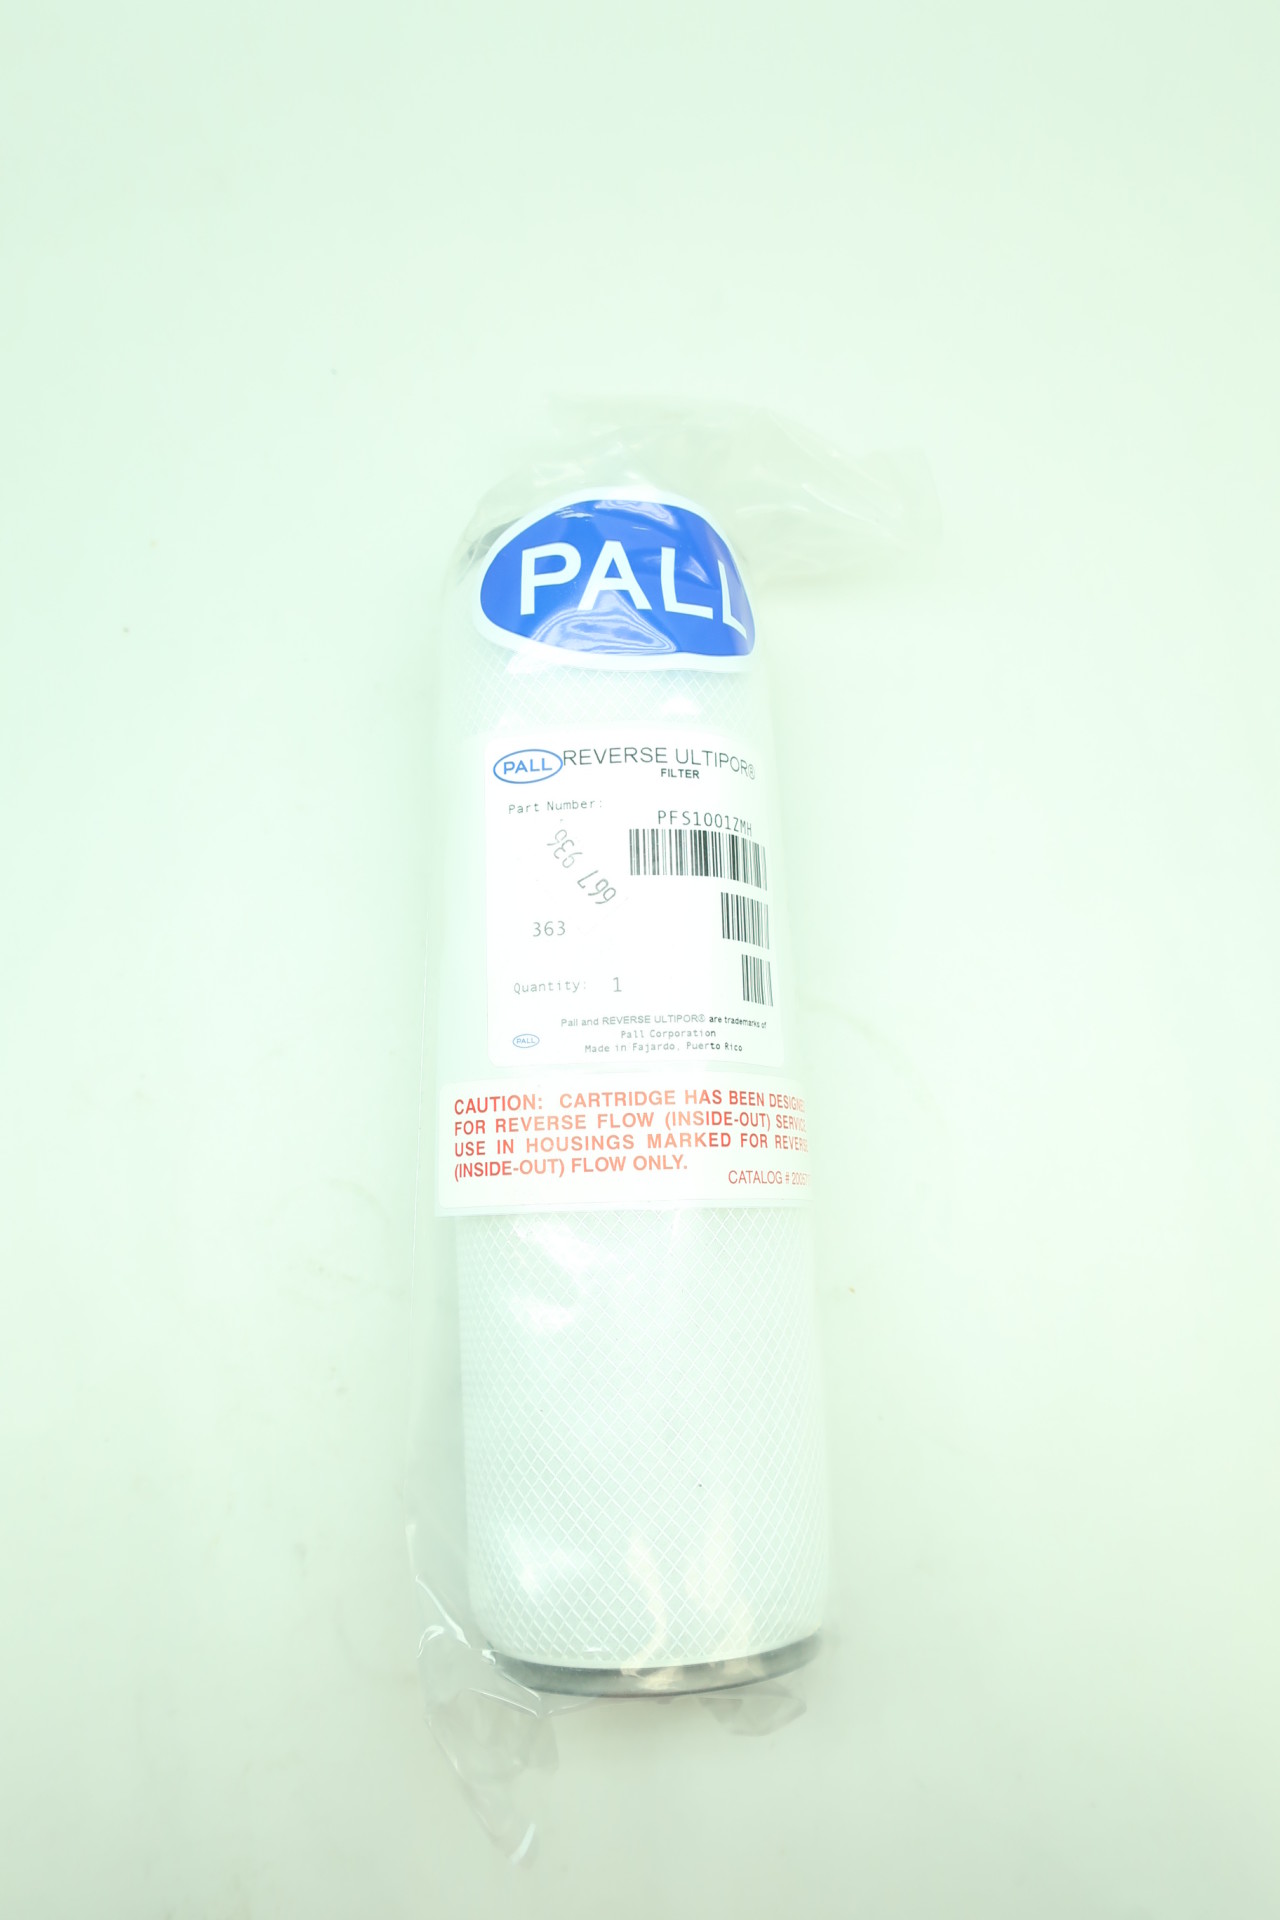 Pall PFS1001ZMH Reverse Ultipor Coalescing Filter Element 